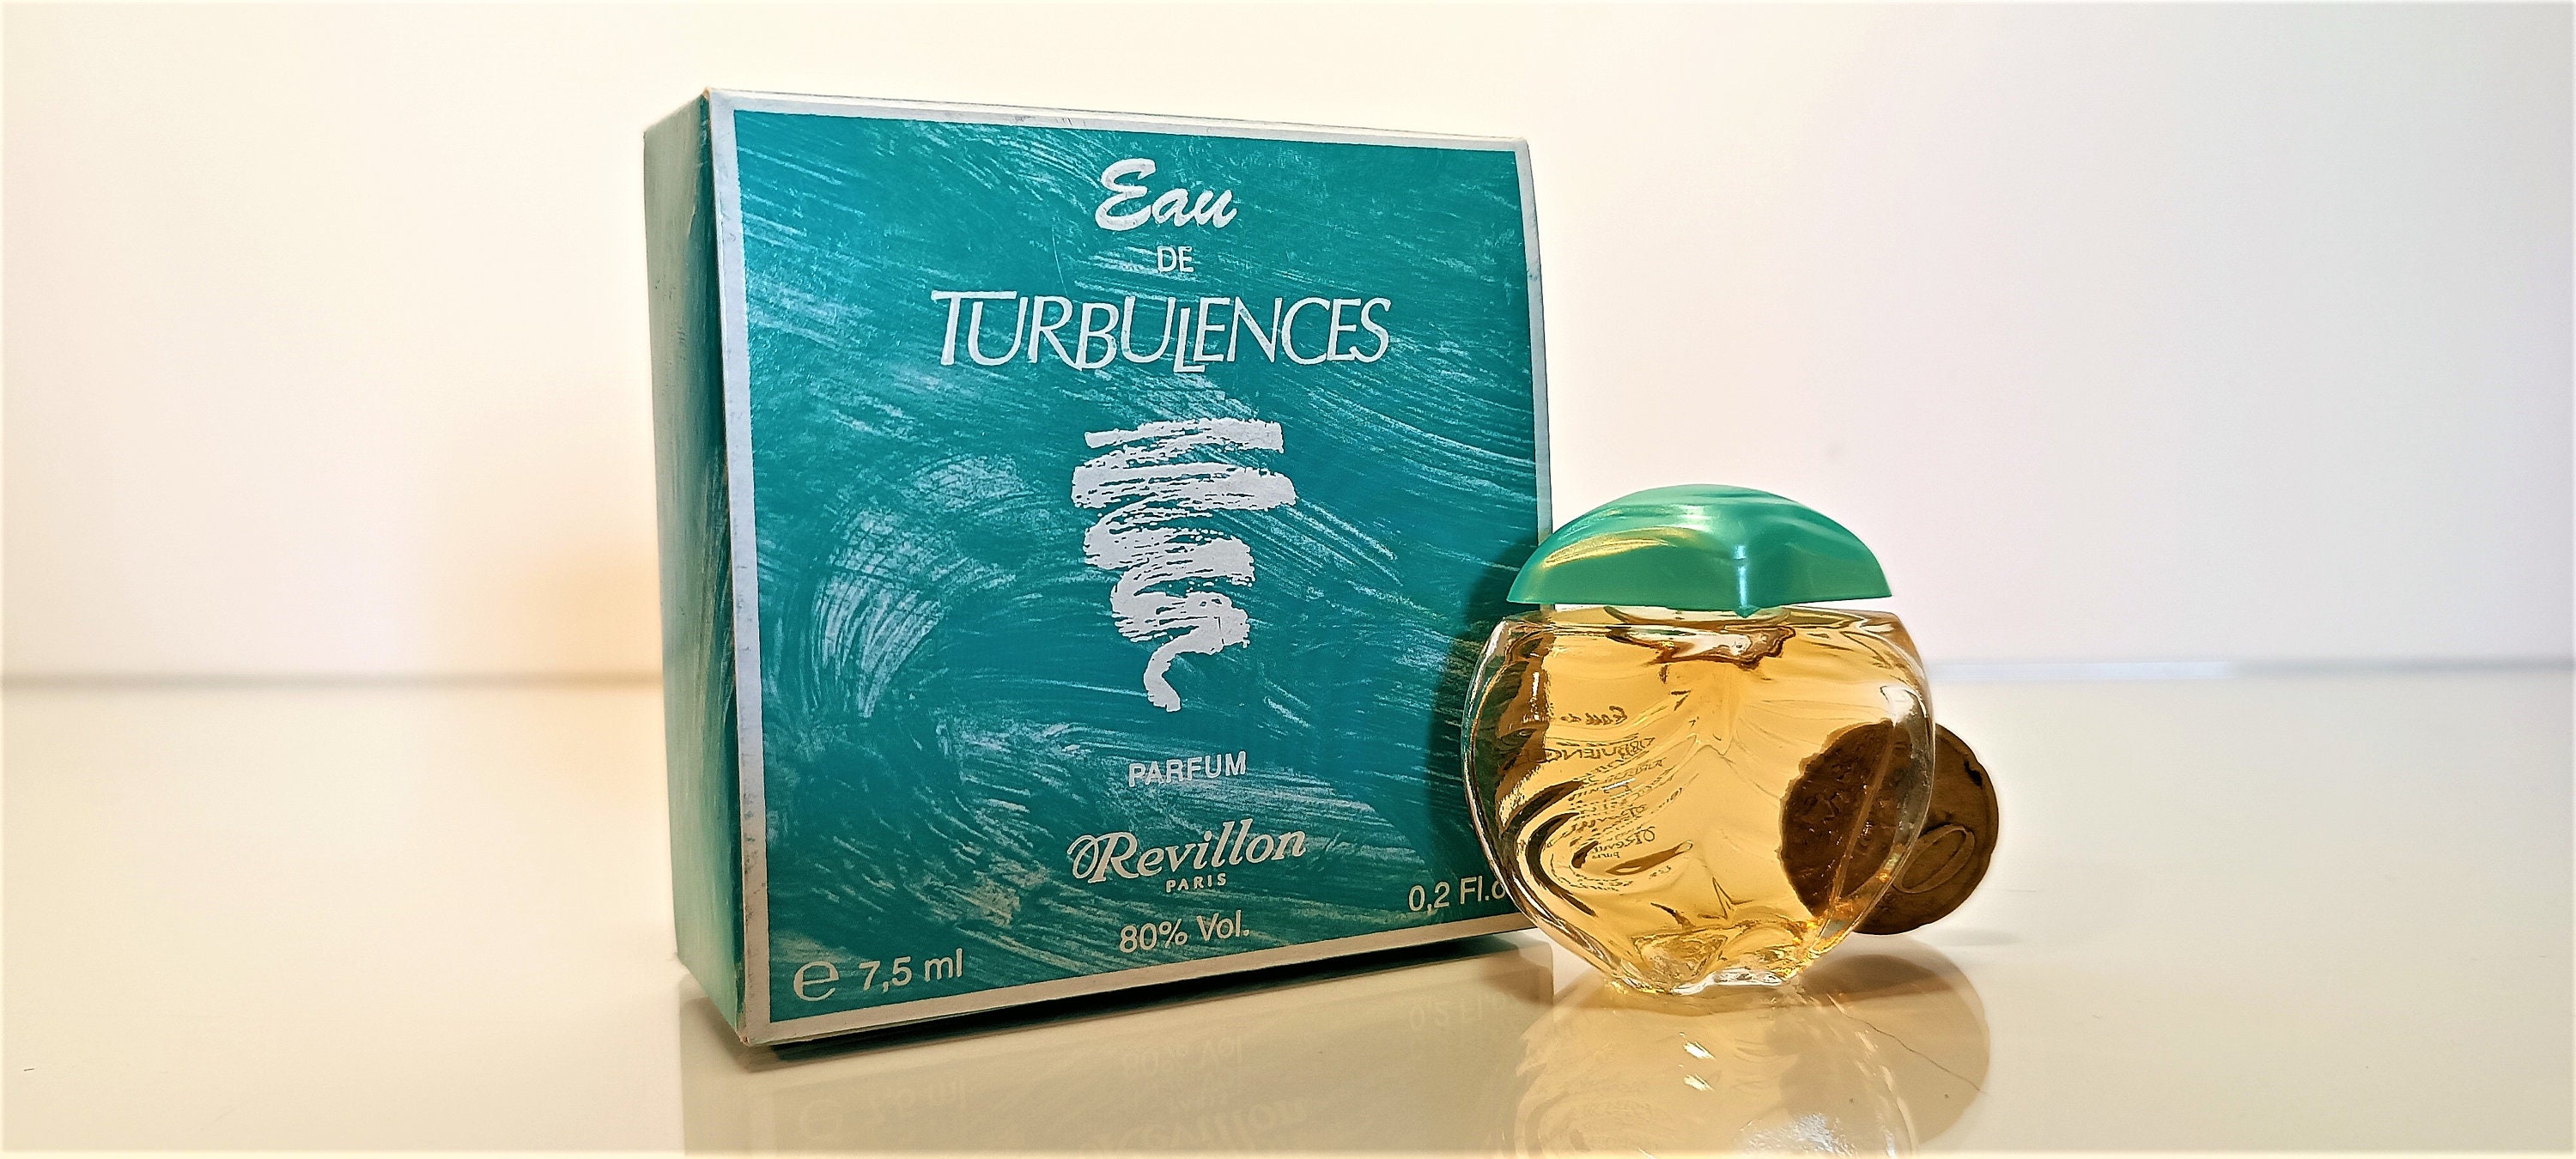 Turbulences by Revillon, Parfum de Toilette Spray (women) 1.7 oz